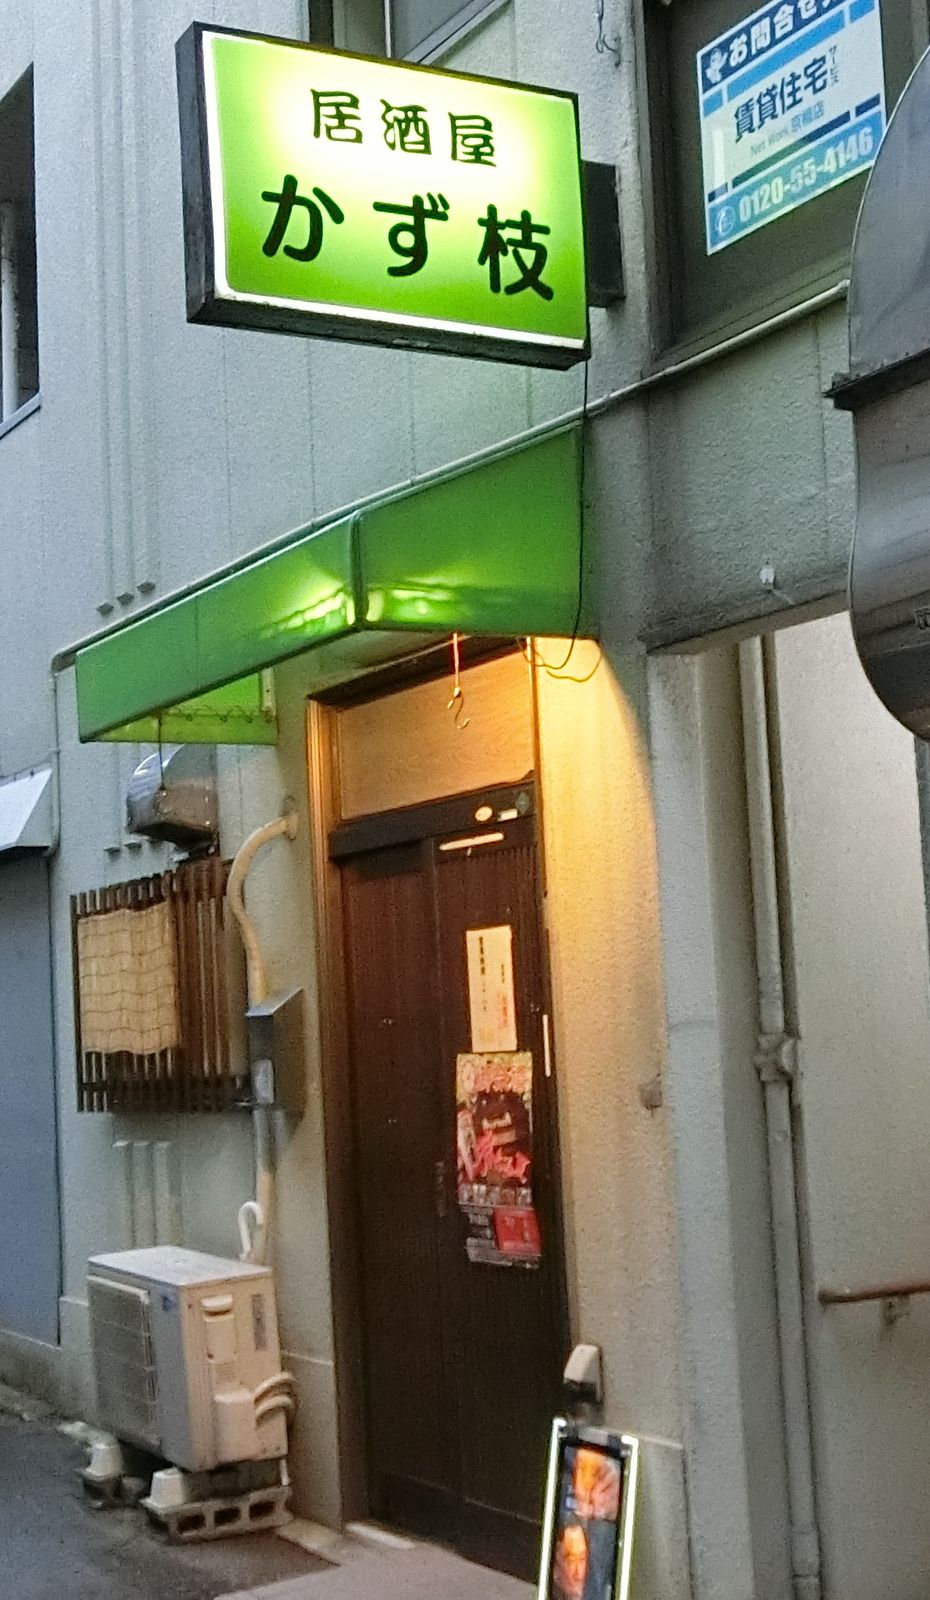 京橋にまた新しい居酒屋さんがオープン 居酒屋 かず枝 やまでらのぶらりグルメ ぶらり日記